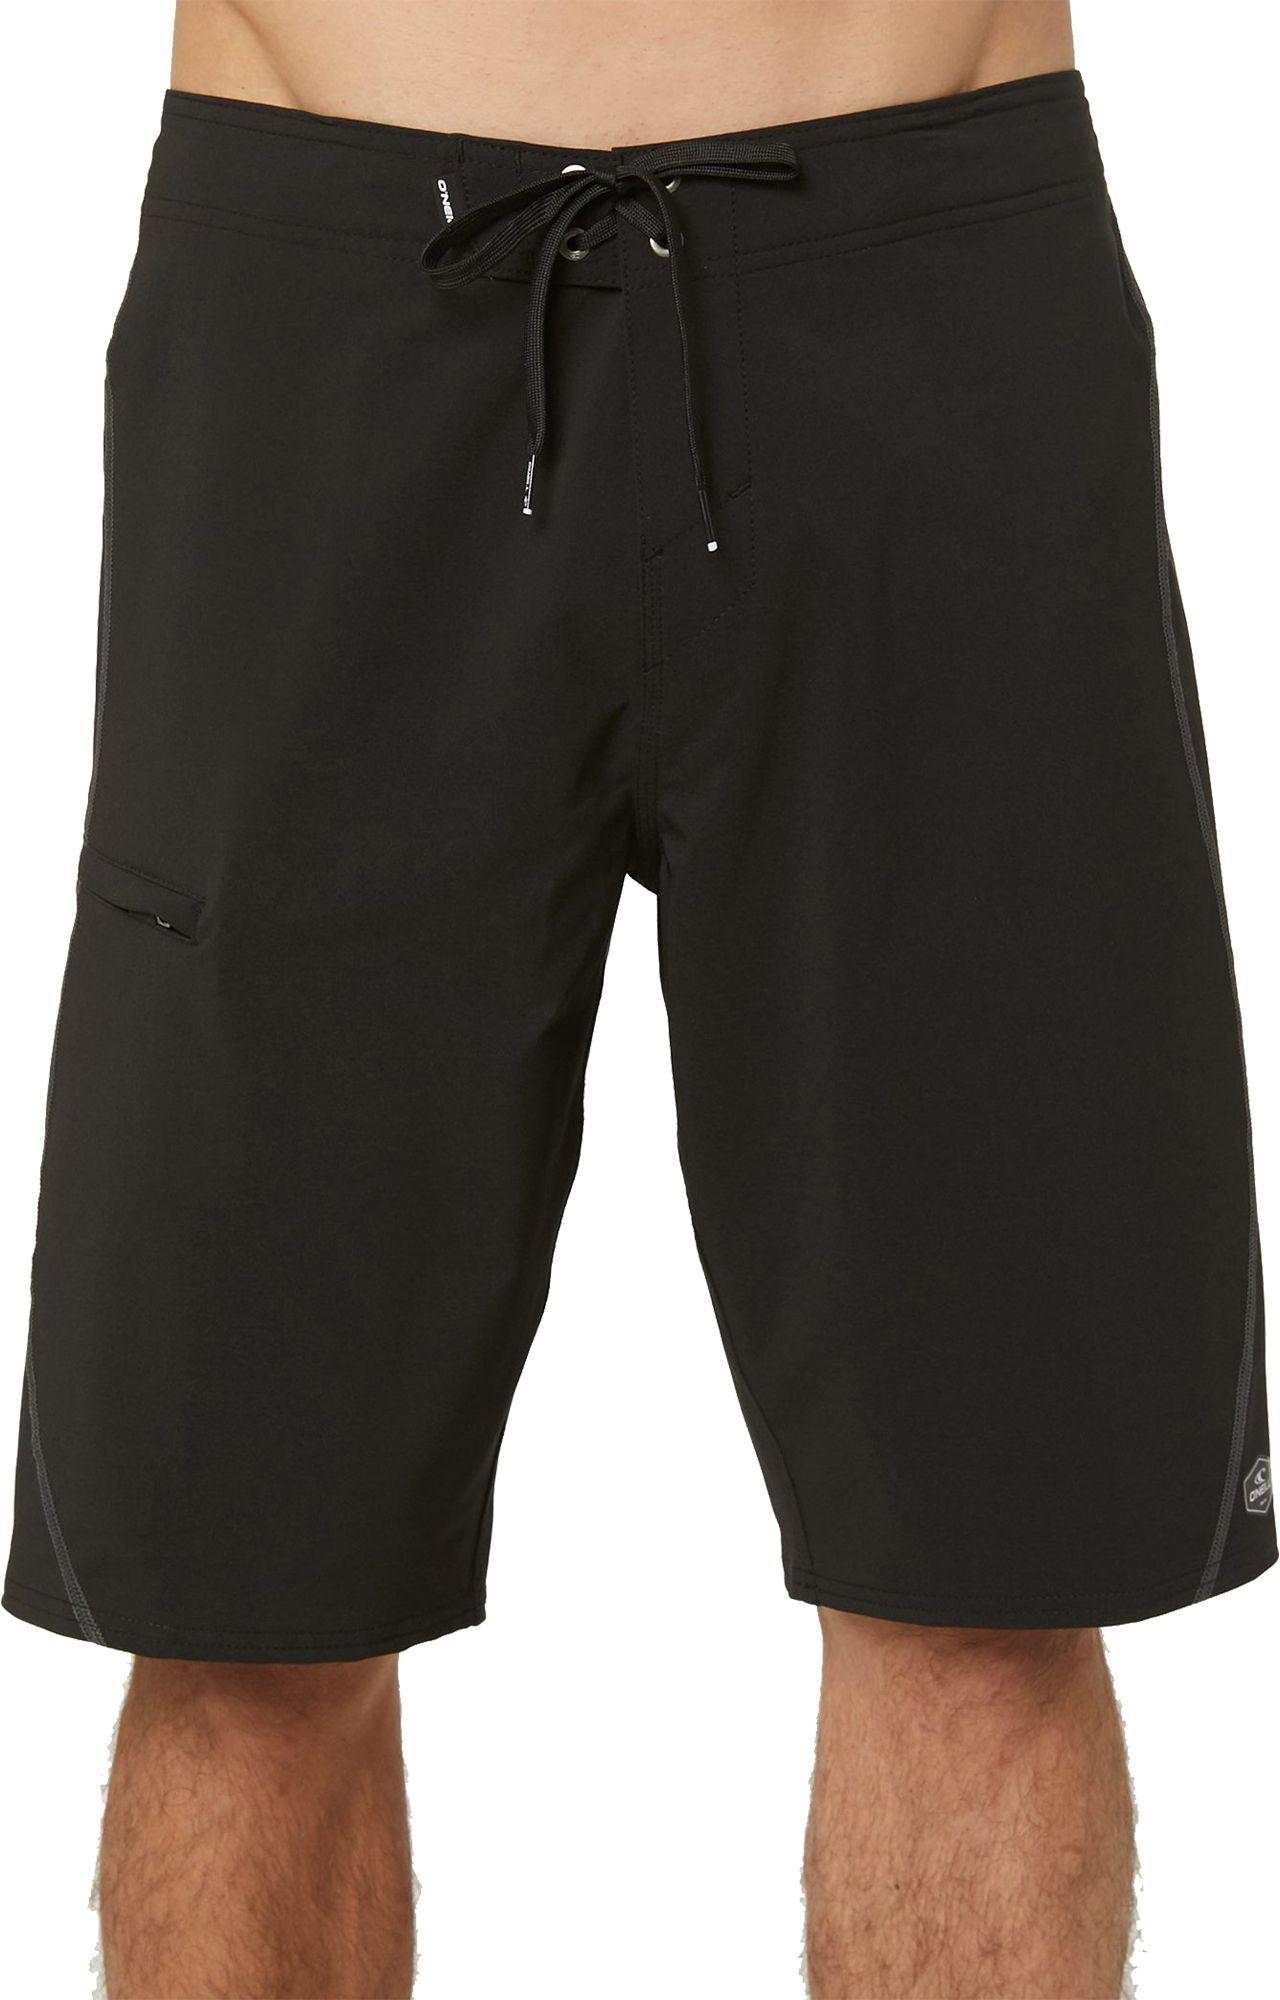 Lyst - O'neill Sportswear Hyperfreak S Seam Board Shorts in Black for Men